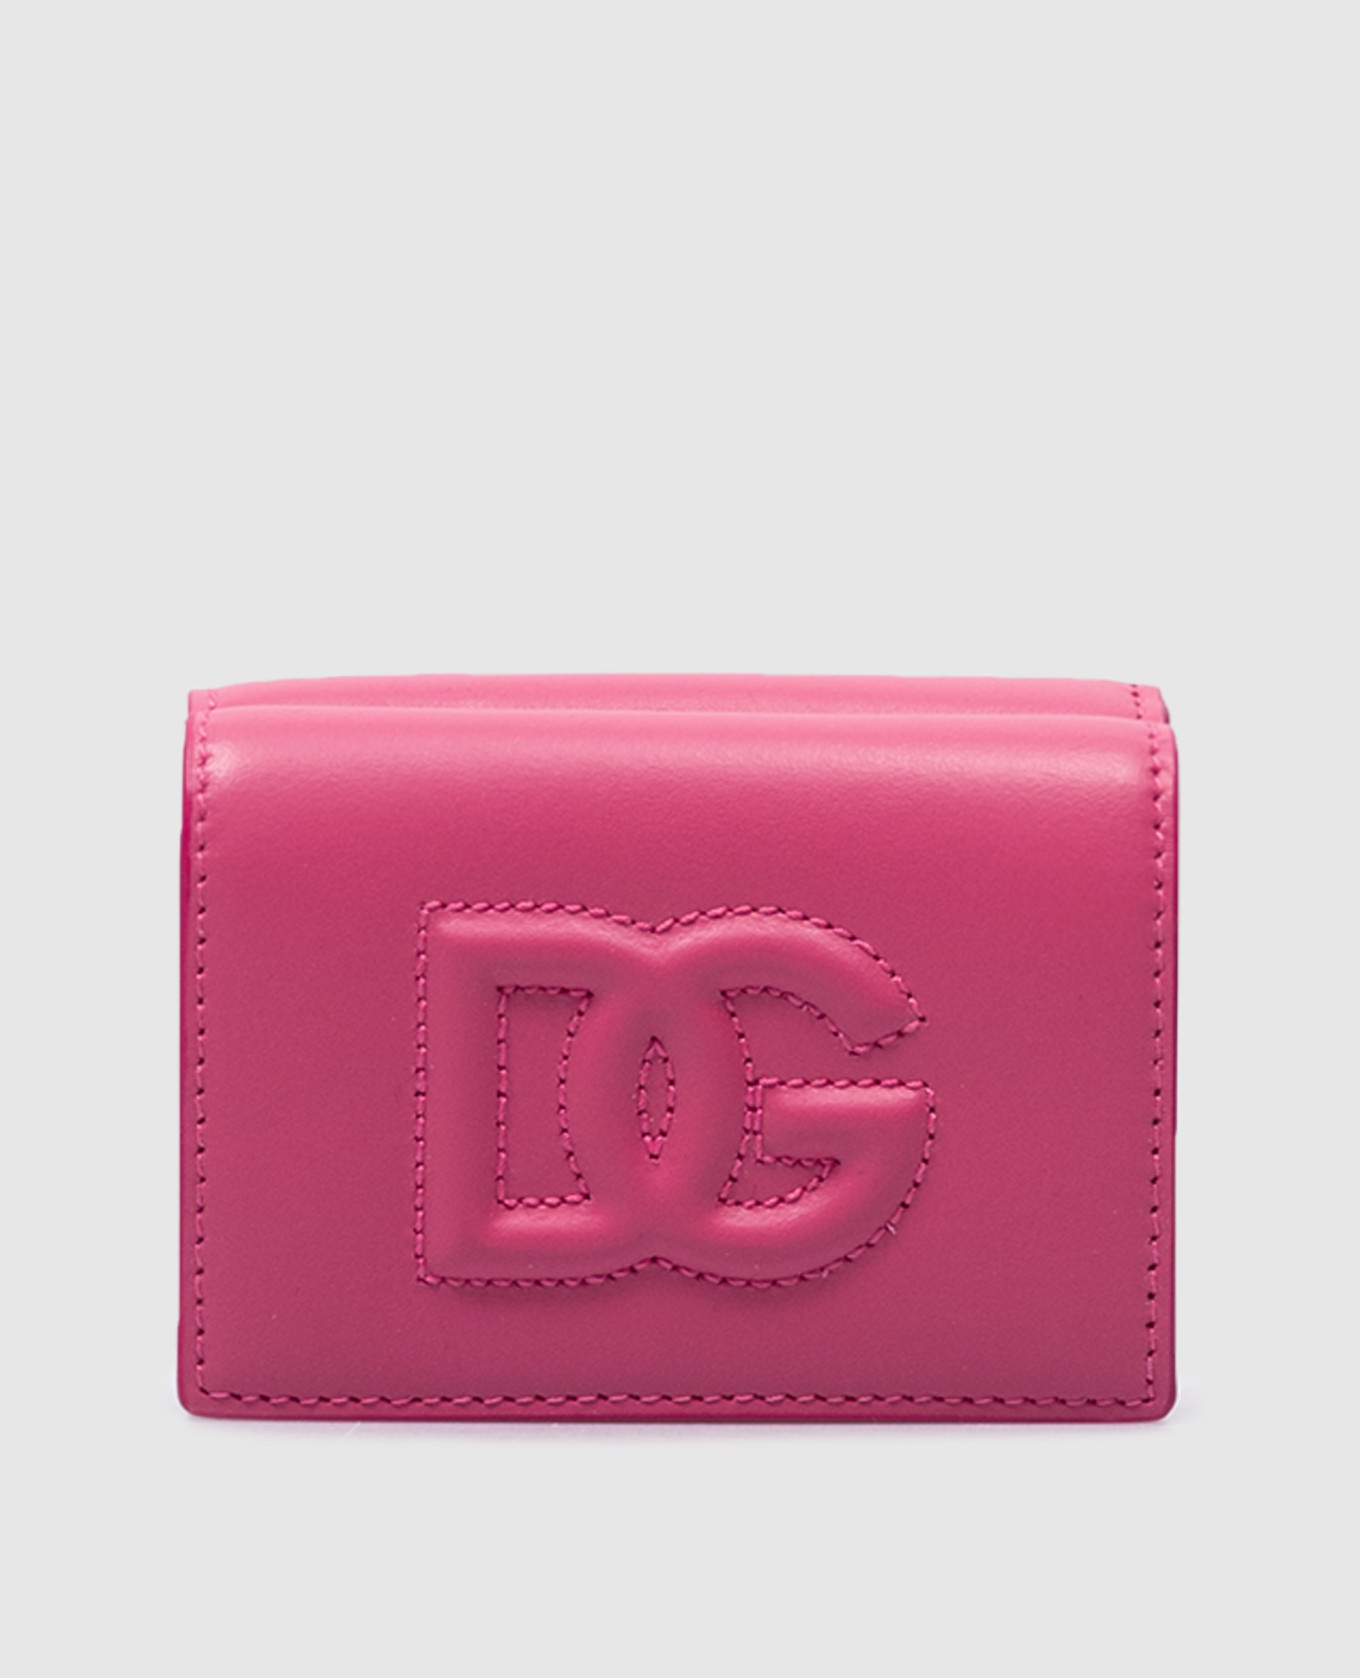 DG LOGO pink leather wallet